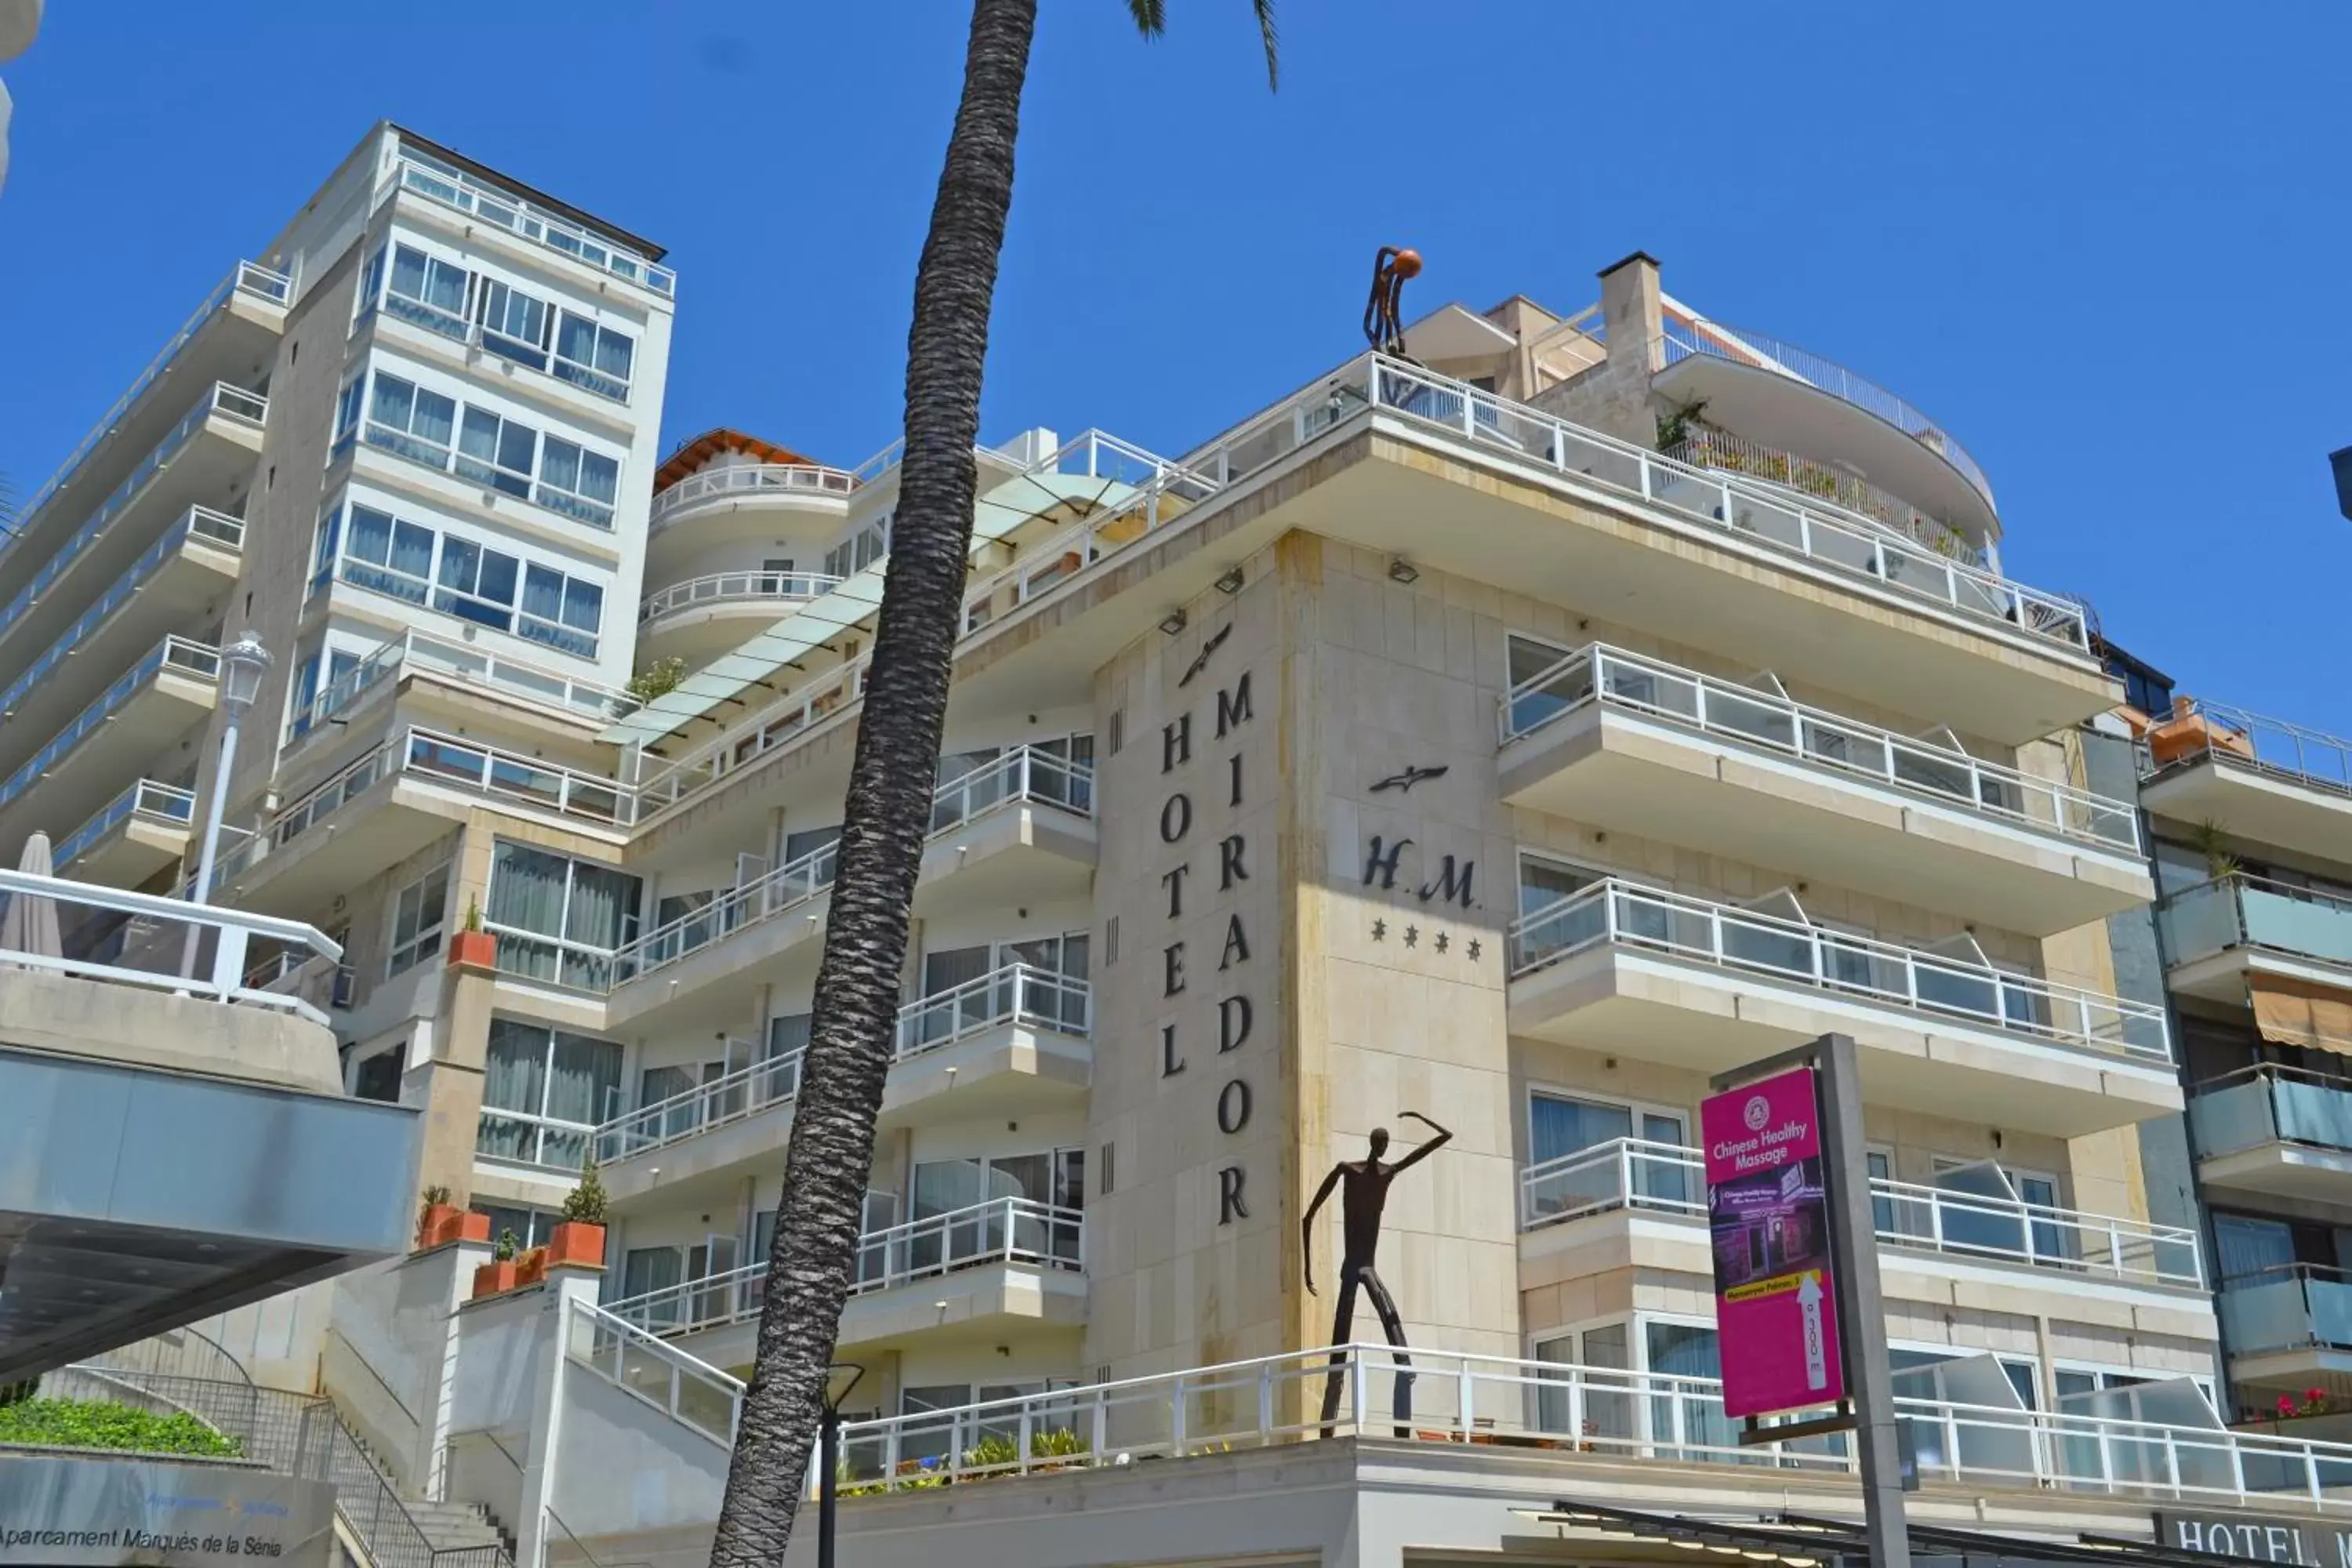 Facade/entrance, Property Building in Hotel Mirador